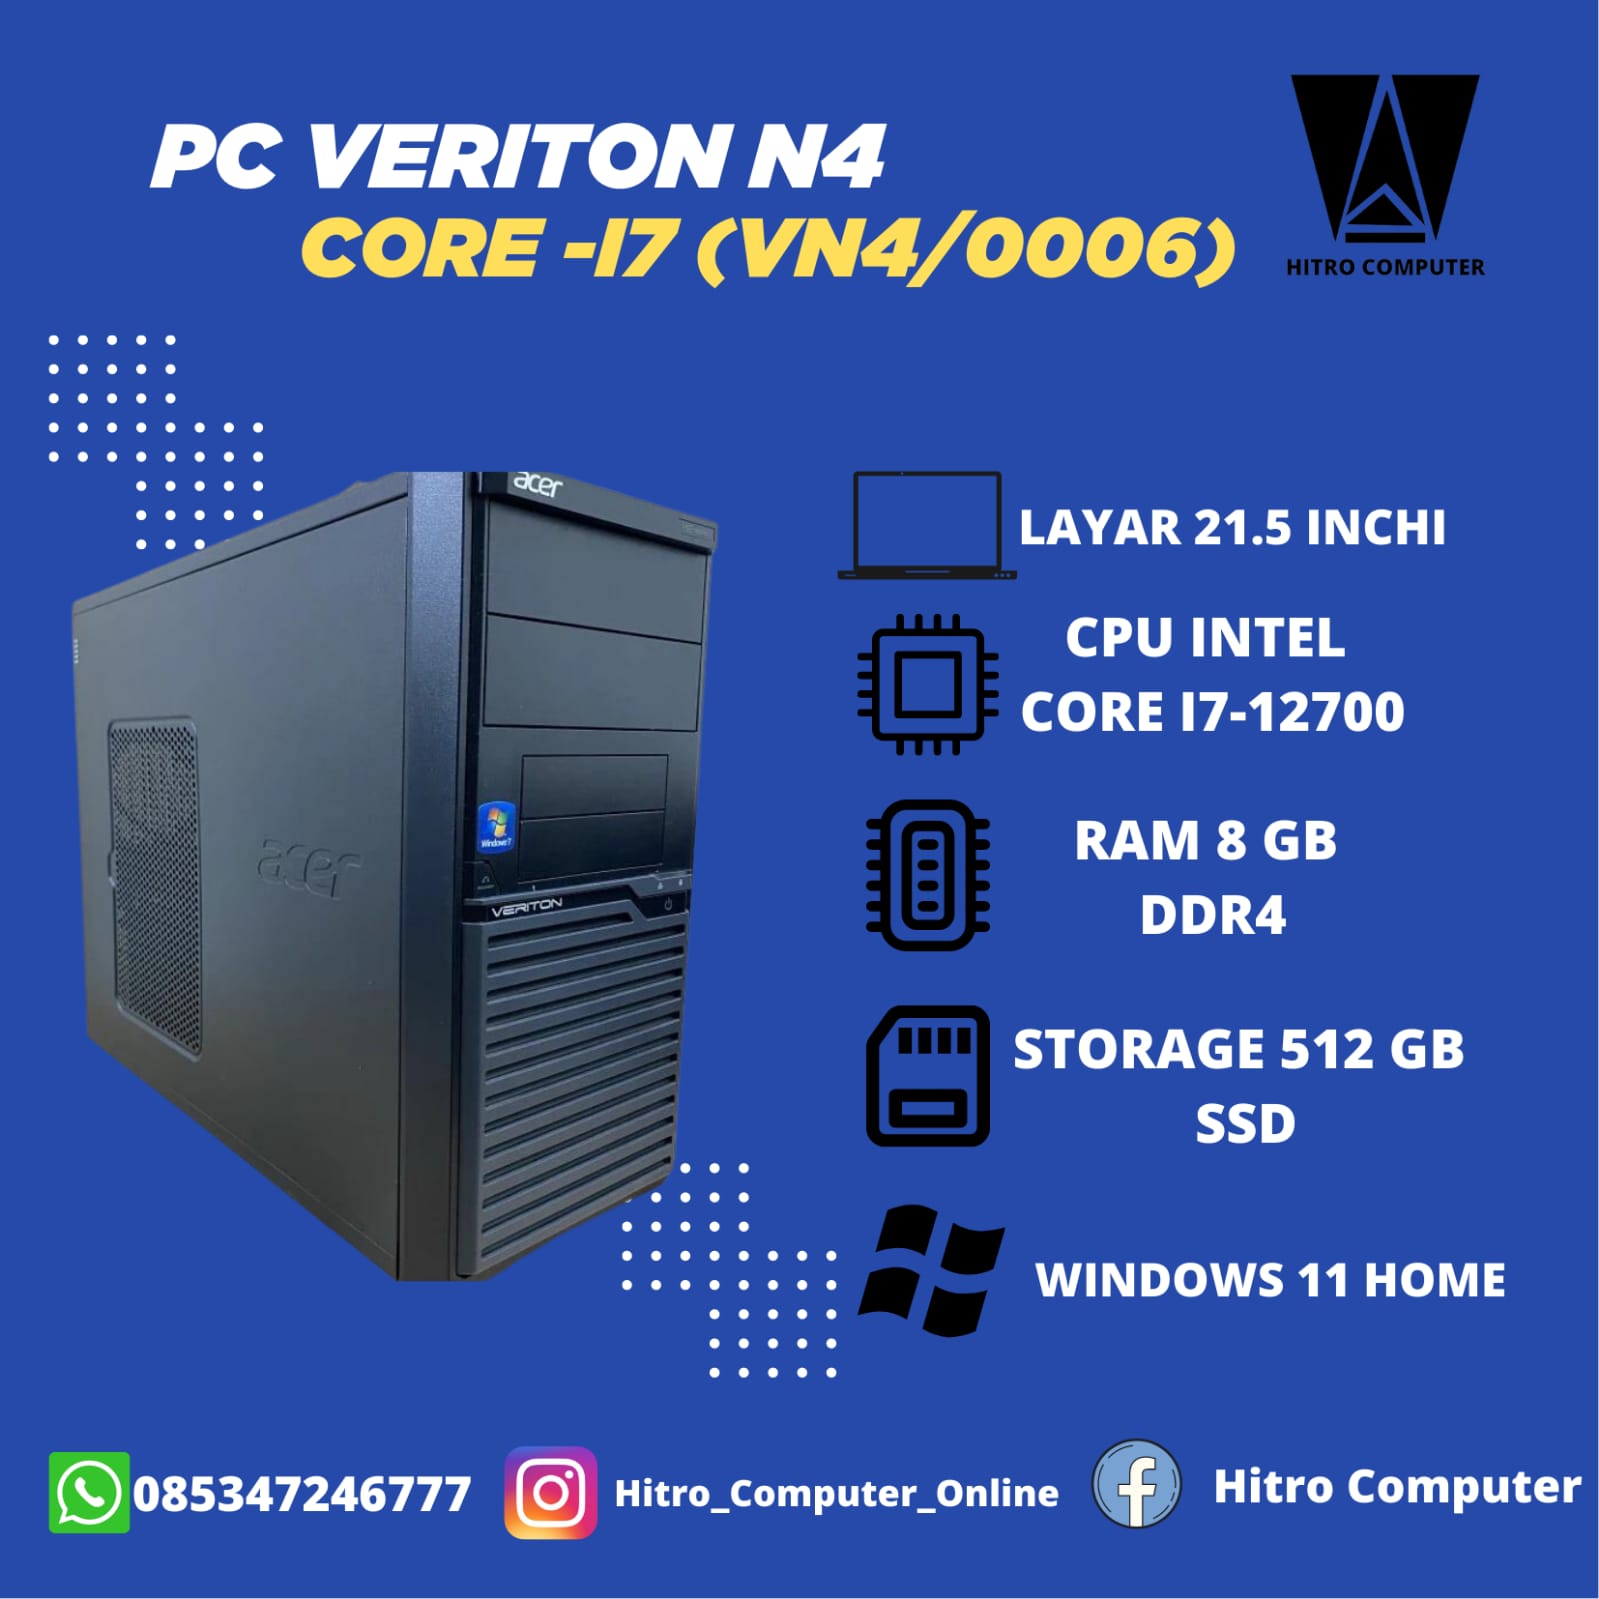 PC VERITON N4 CORE I7 (VN4 / 0006)